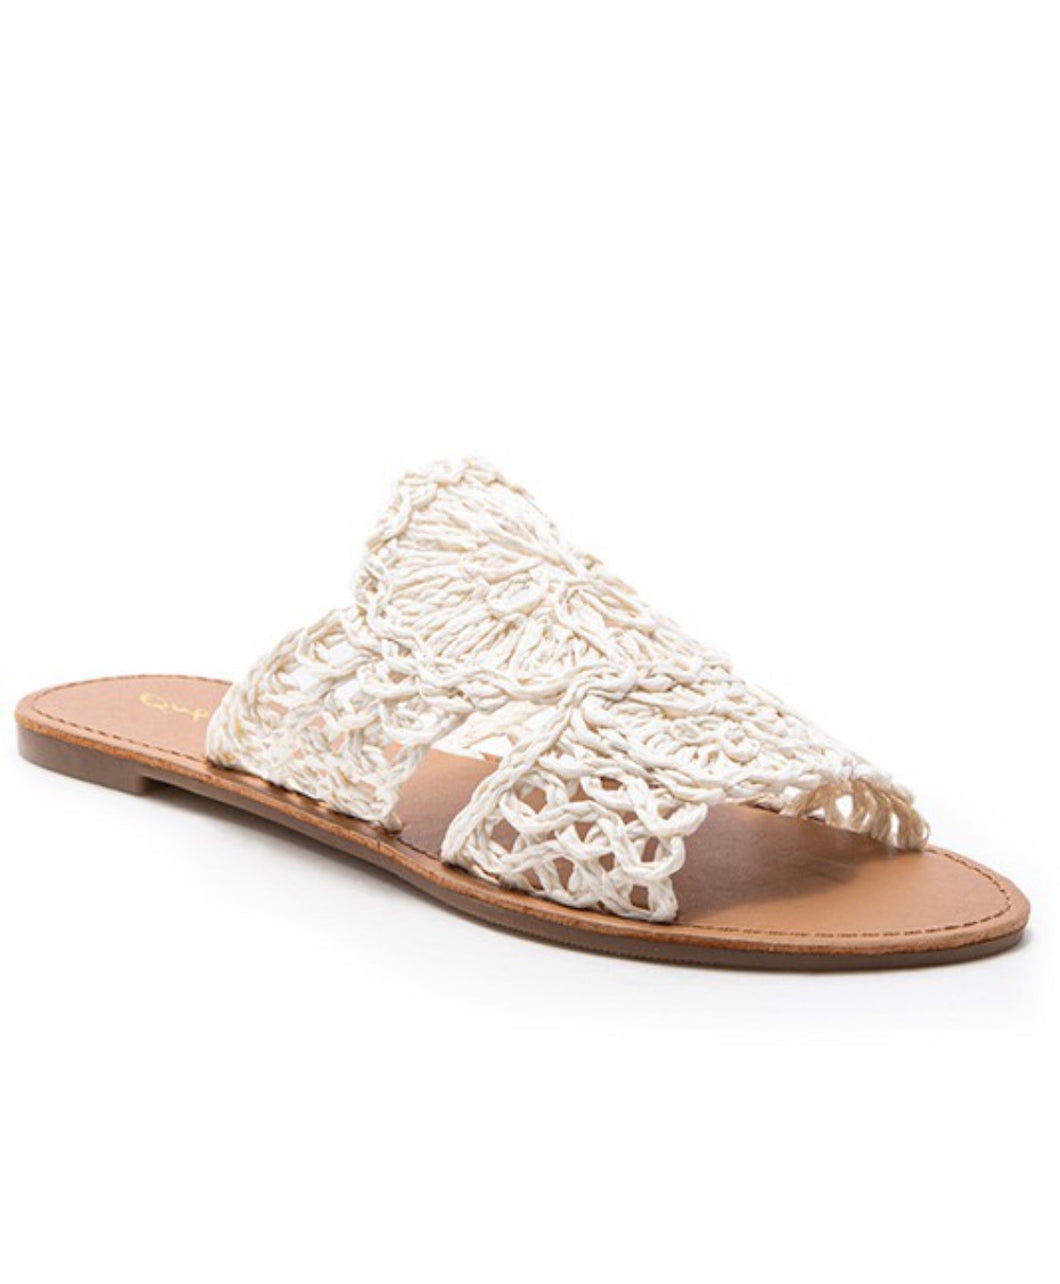 Athena White Sandals